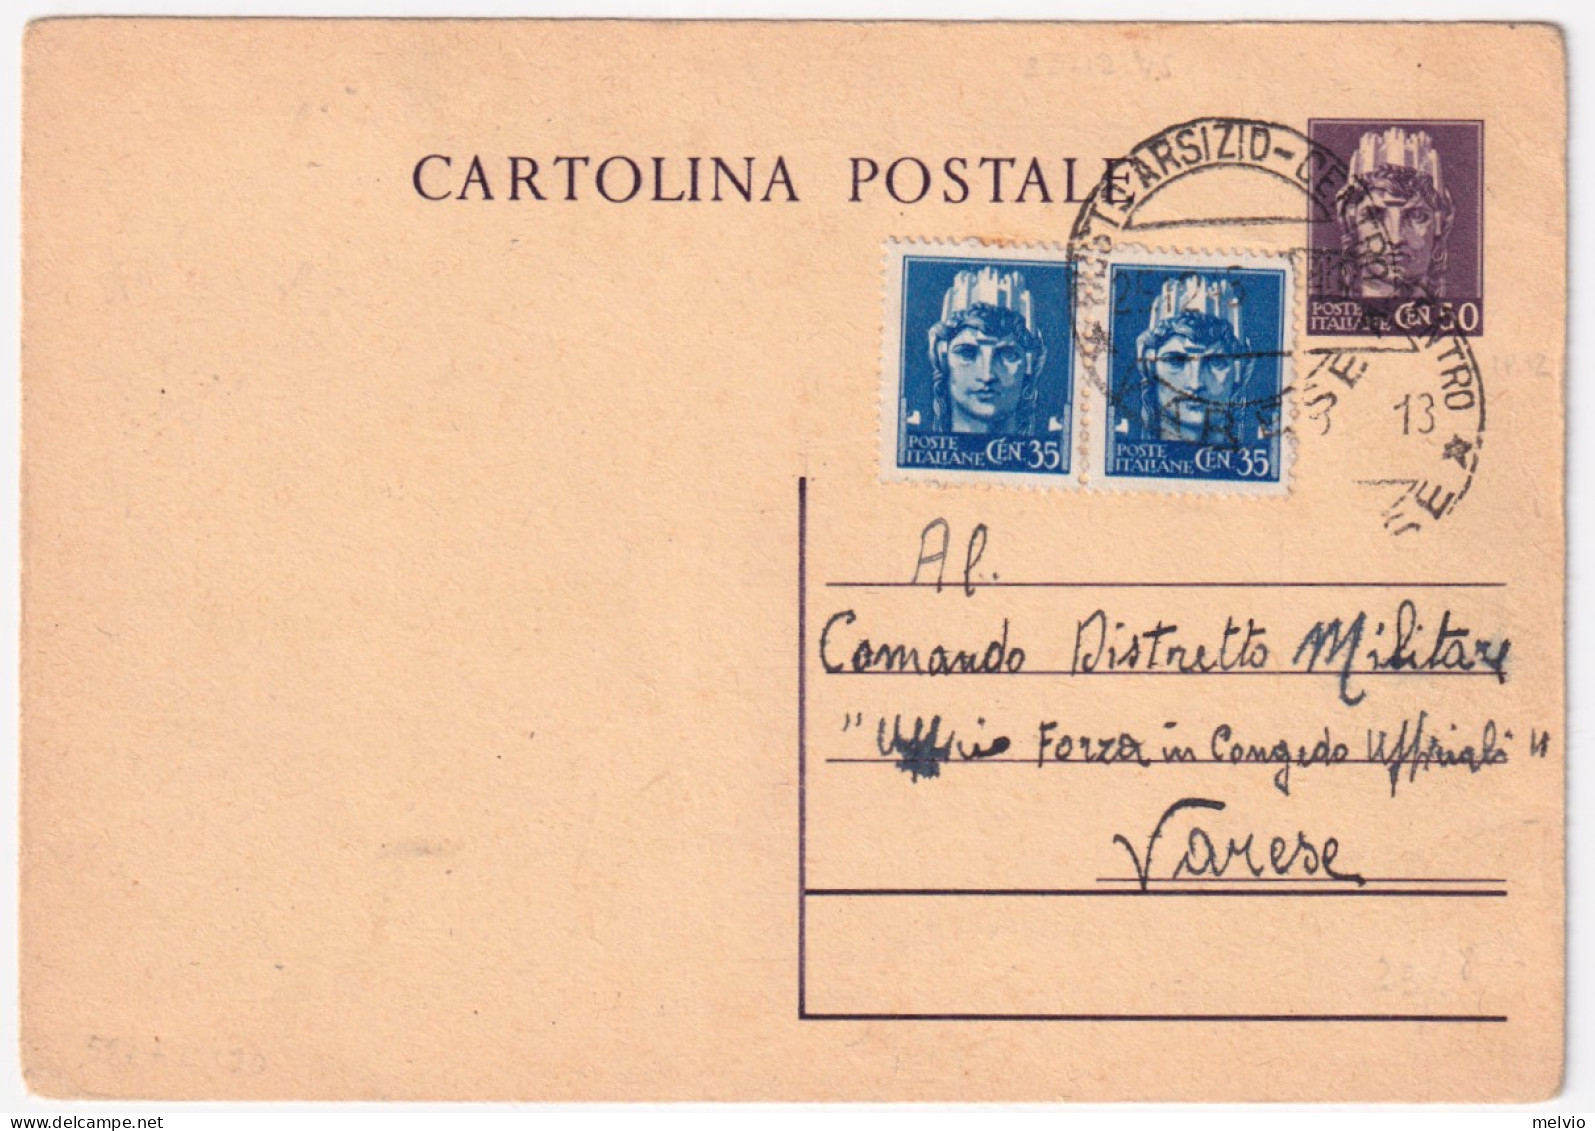 1945-Cartolina Postale C.50 (C120) Con Fr.lli Aggiunti Imperiale Senza Filigrana - Marcophilia